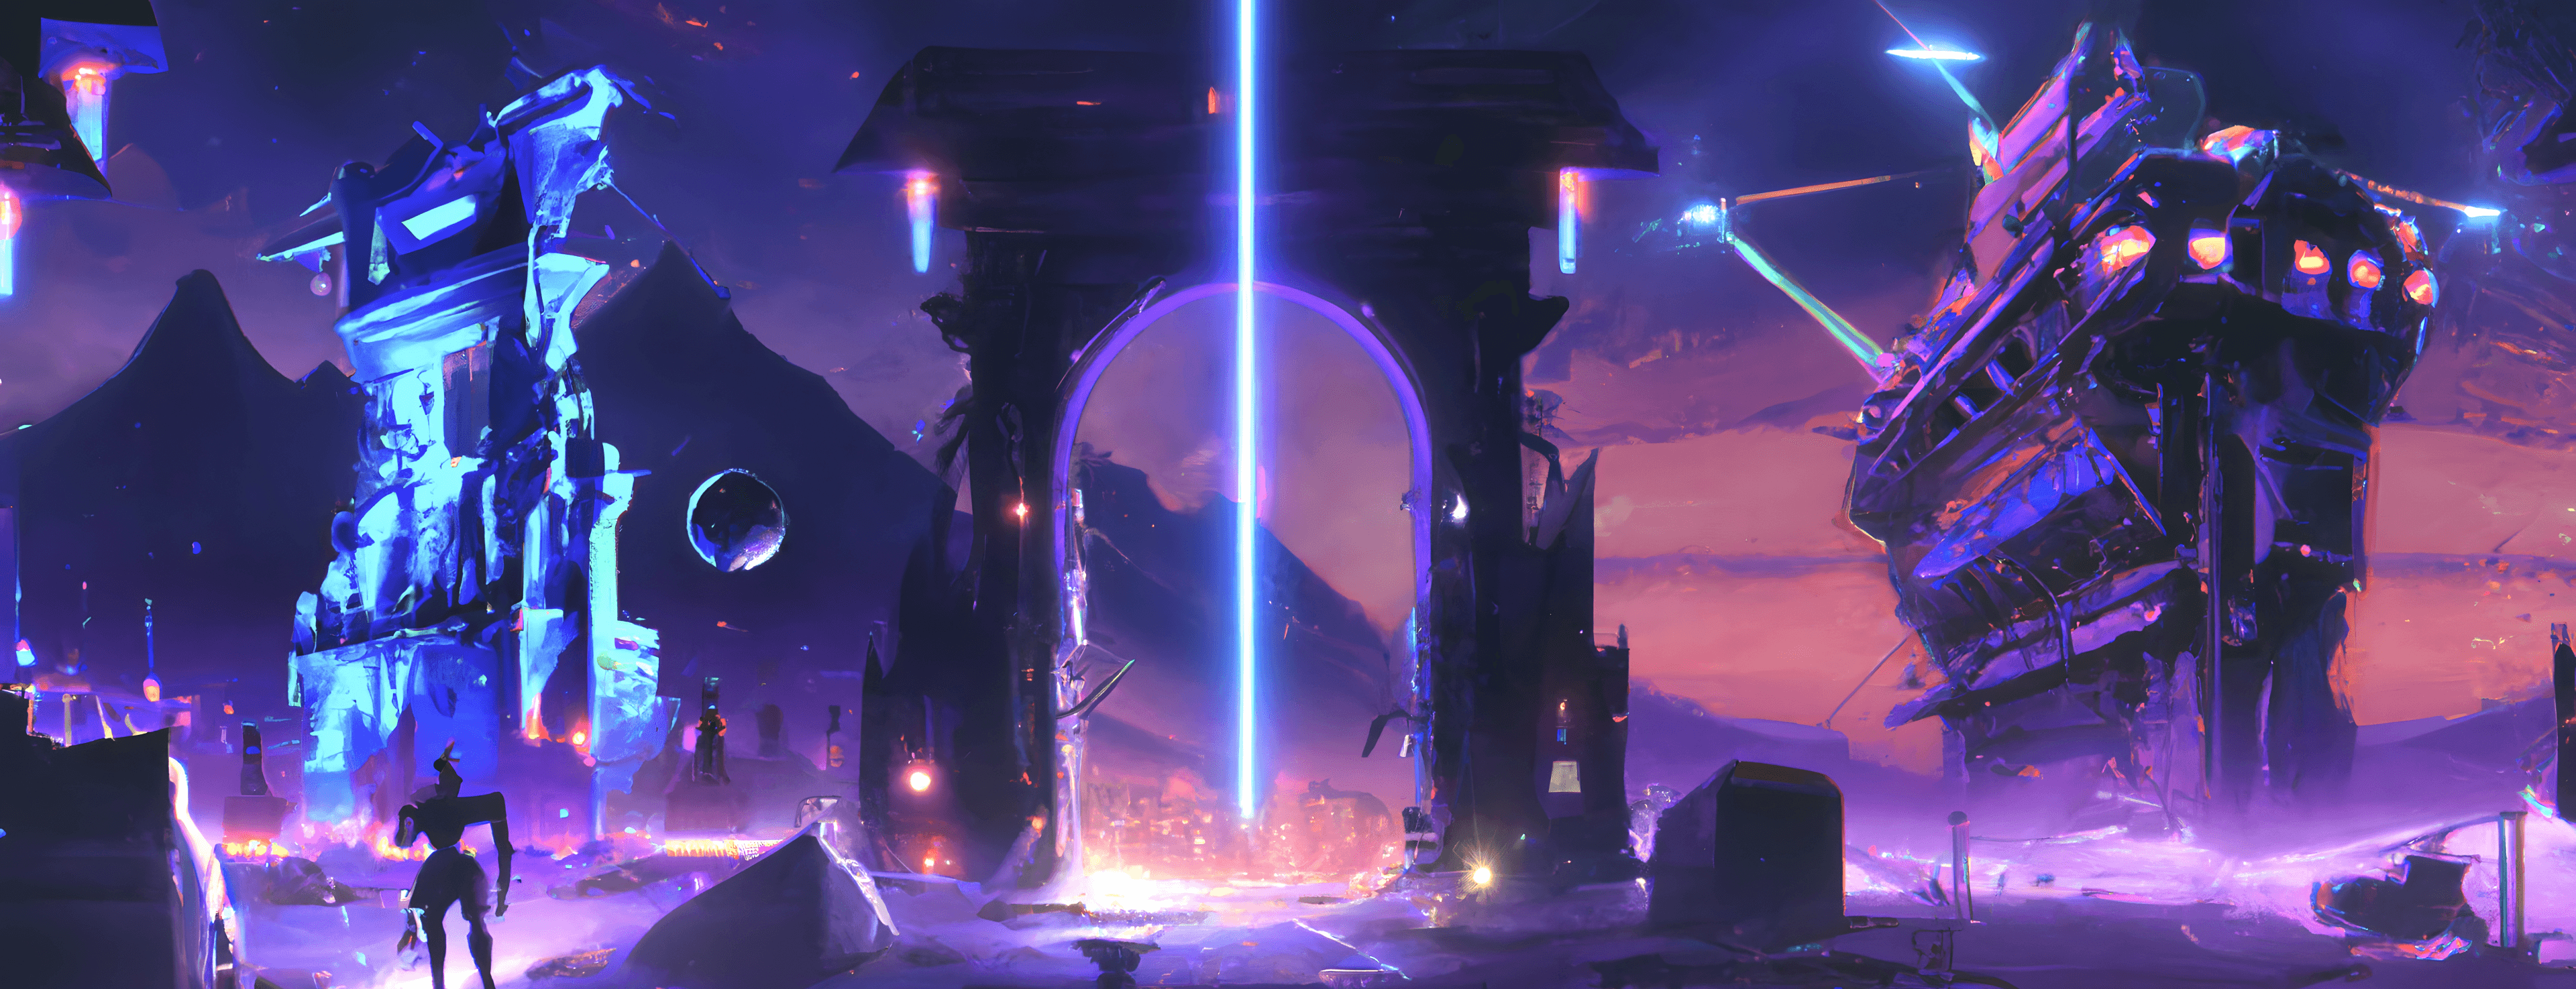 Sci-Fi Dream "Ancient Future"